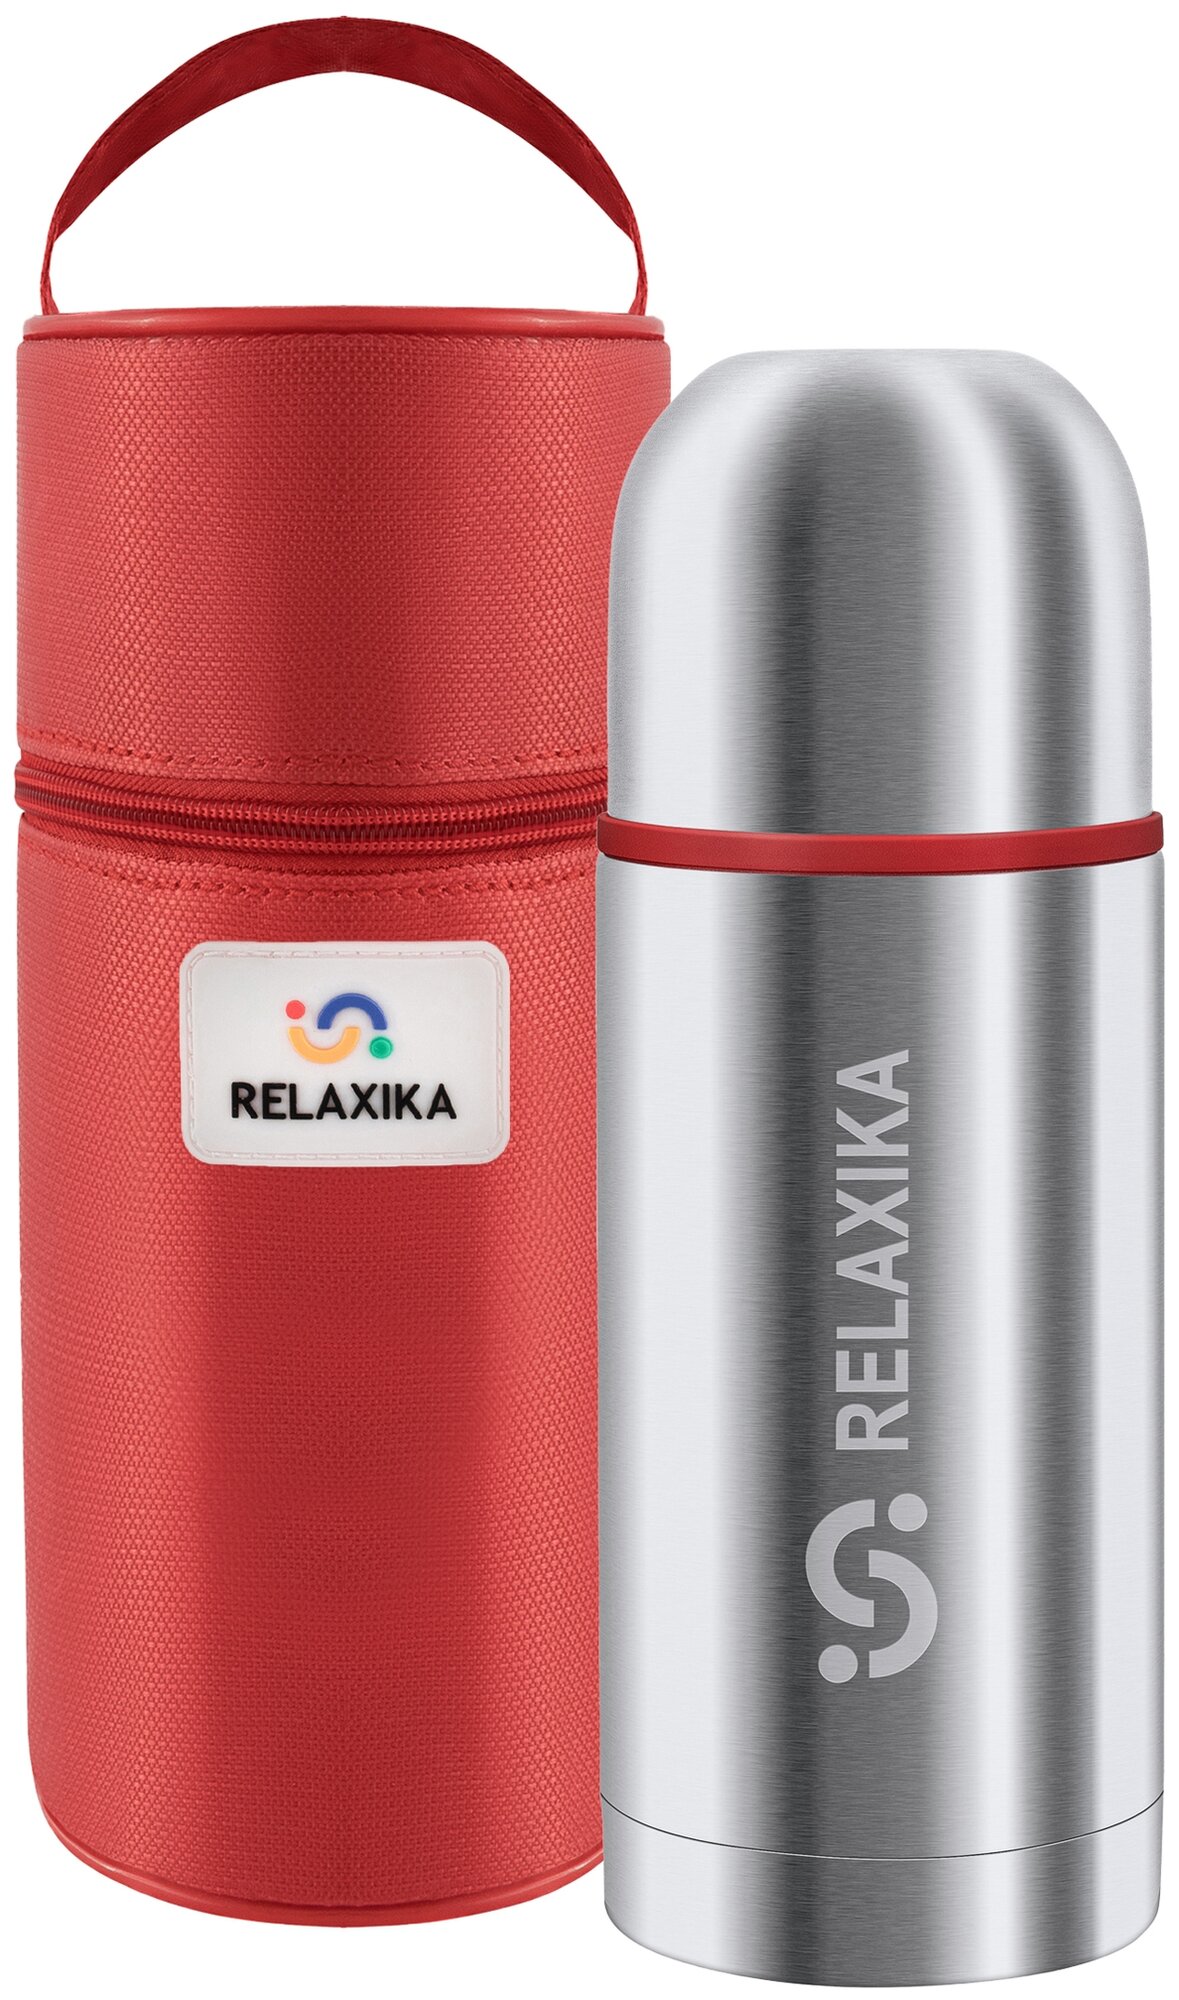 Классический термос Relaxika 102 в термочехле, 0.5 л, серебристый